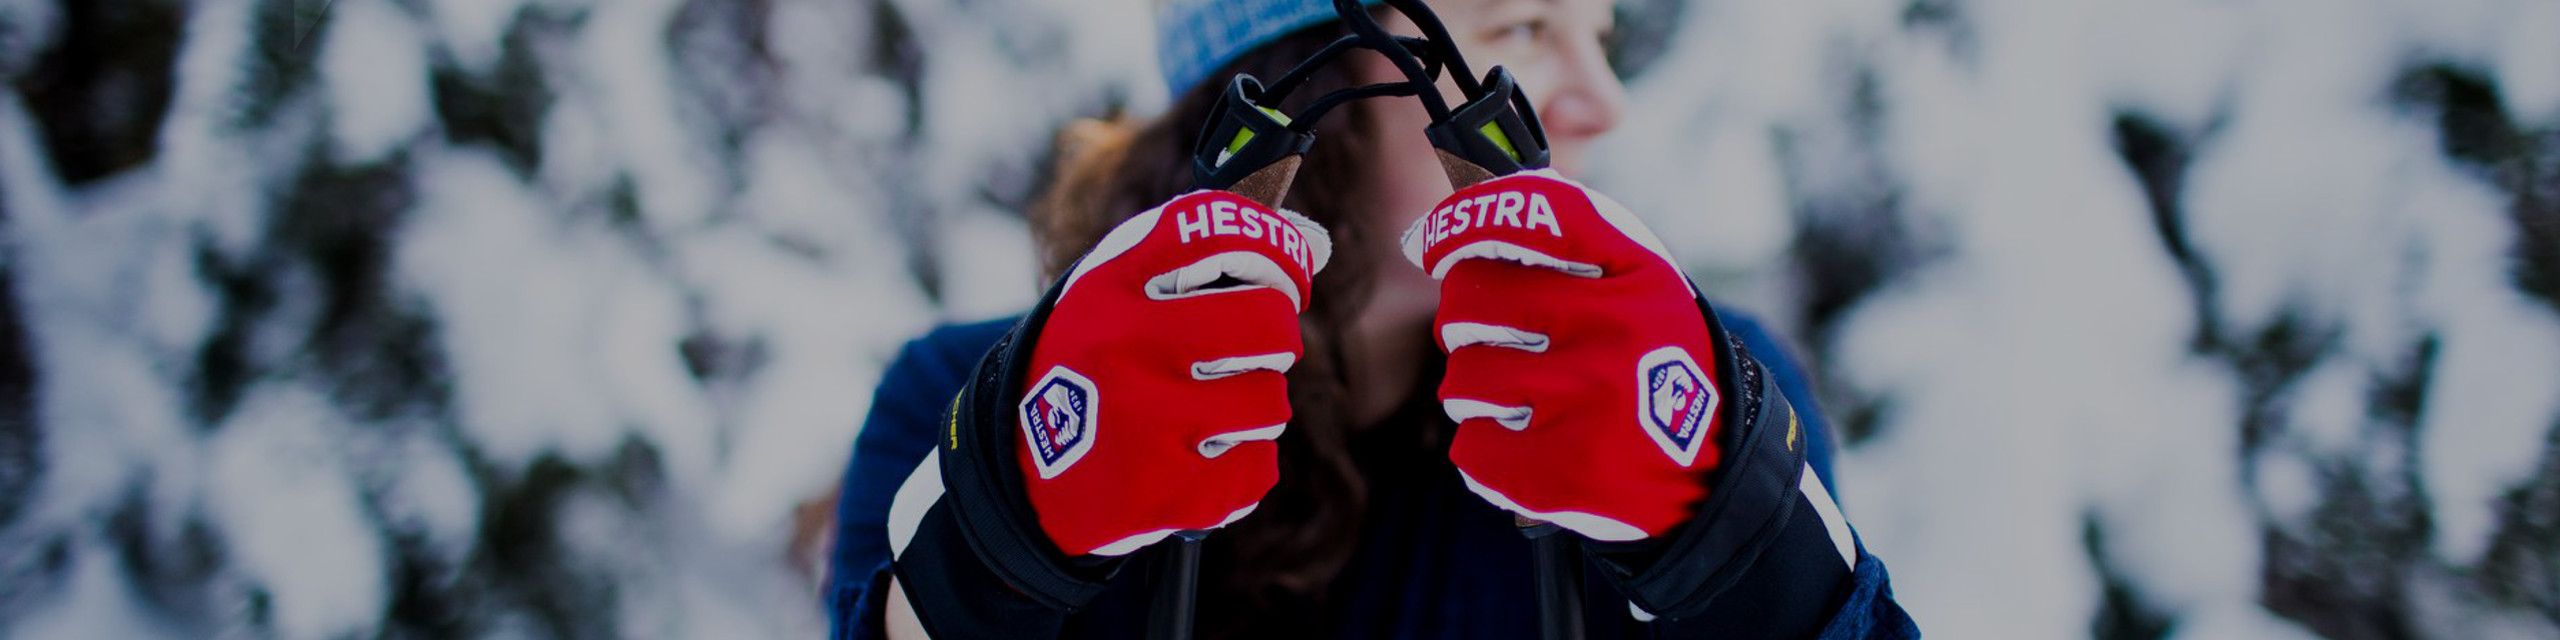 Hestra gloves